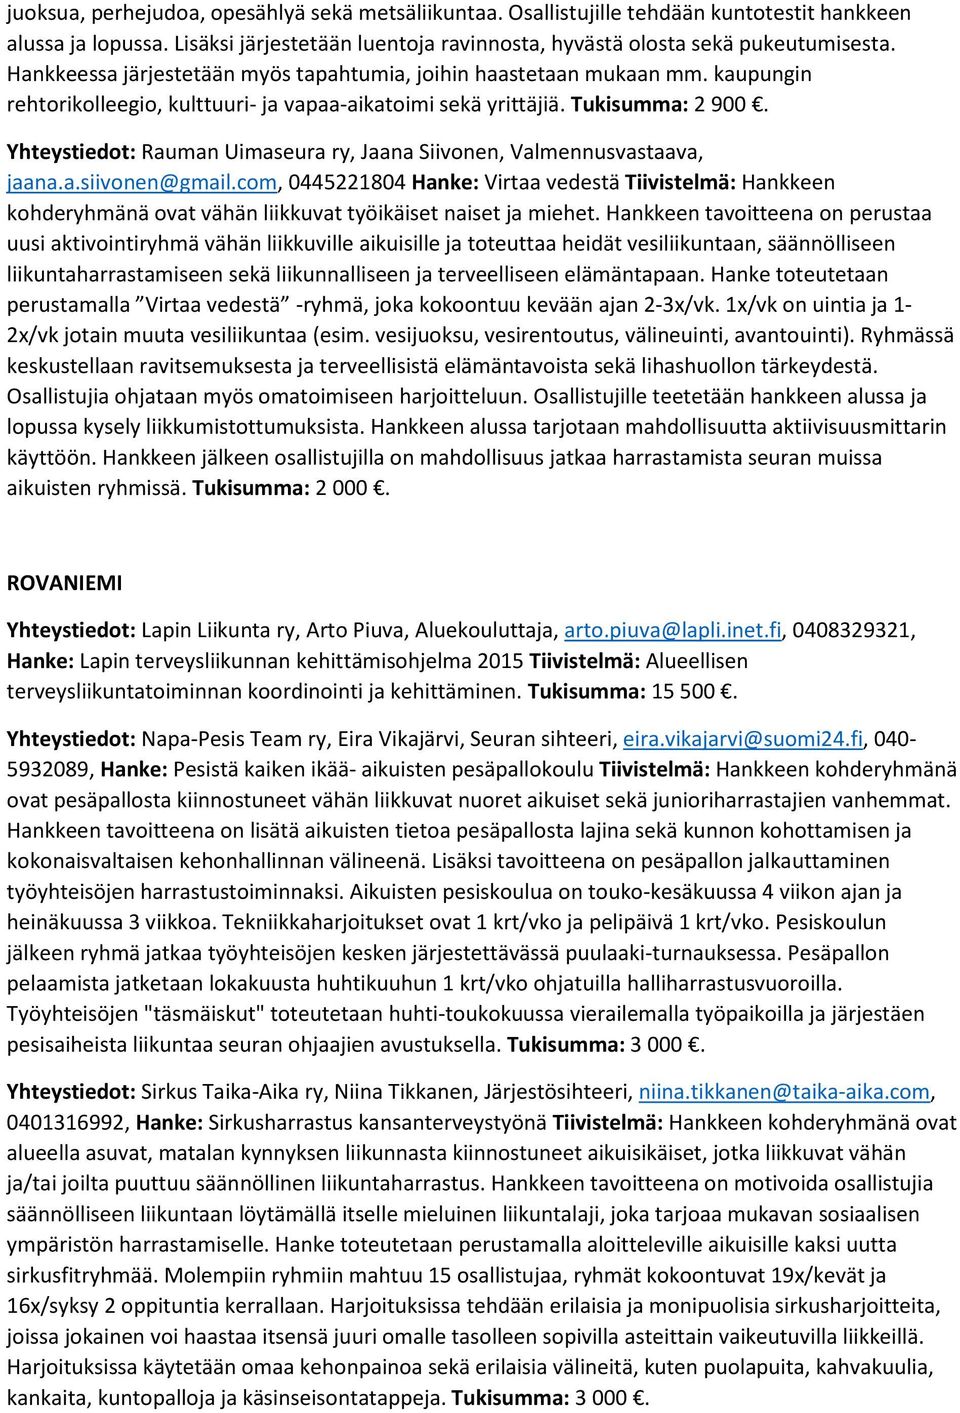 Yhteystiedot: Rauman Uimaseura ry, Jaana Siivonen, Valmennusvastaava, jaana.a.siivonen@gmail.